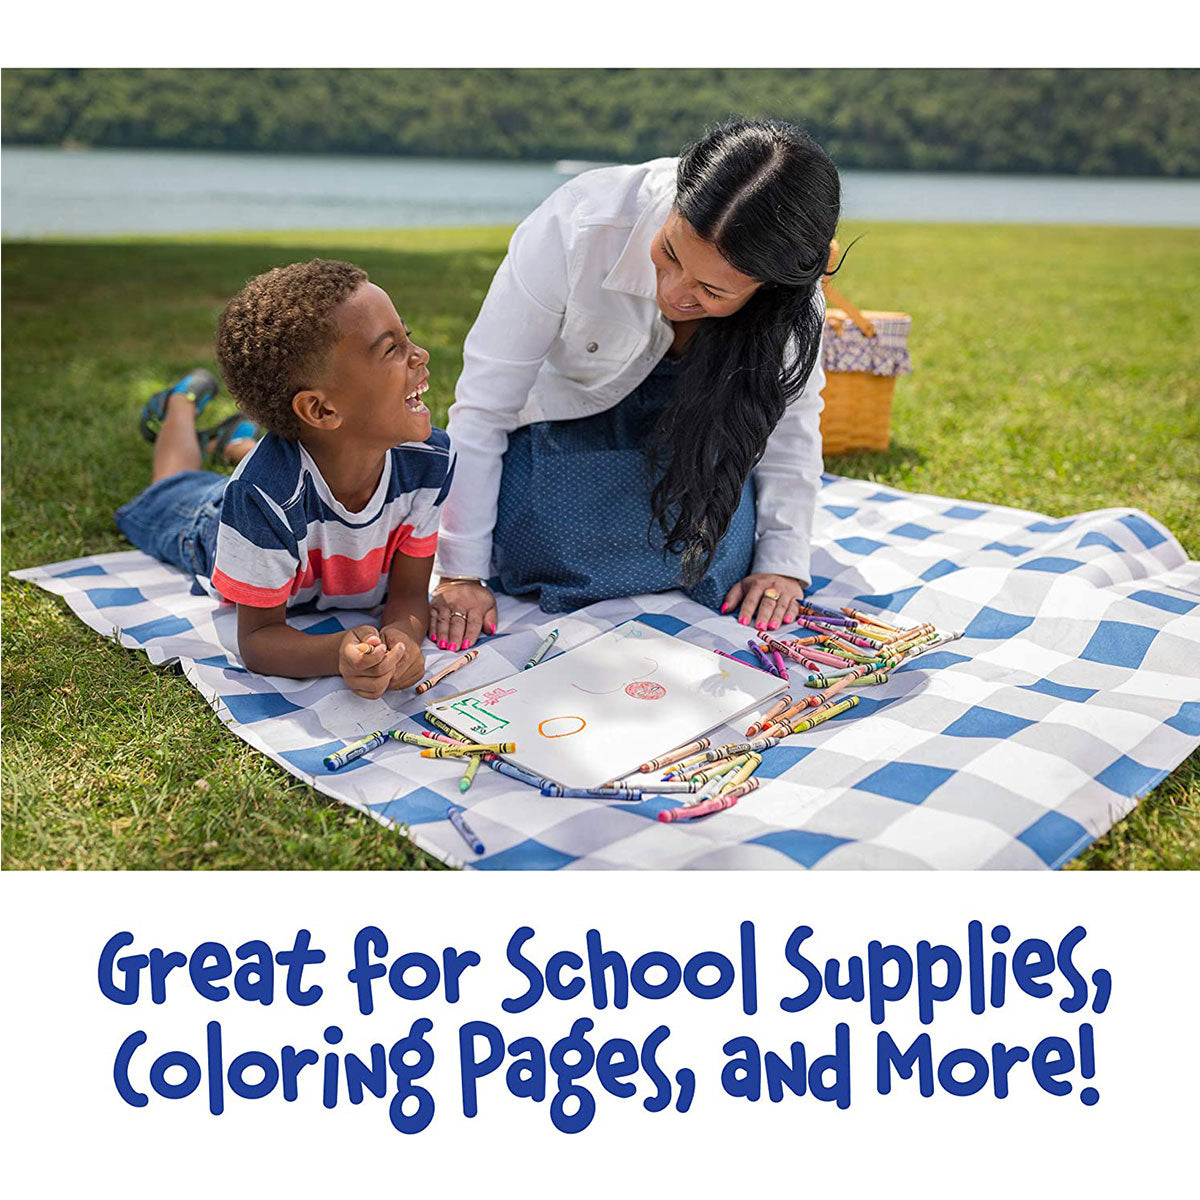 Crayola Washable Crayons, School Supplies, 24 Count